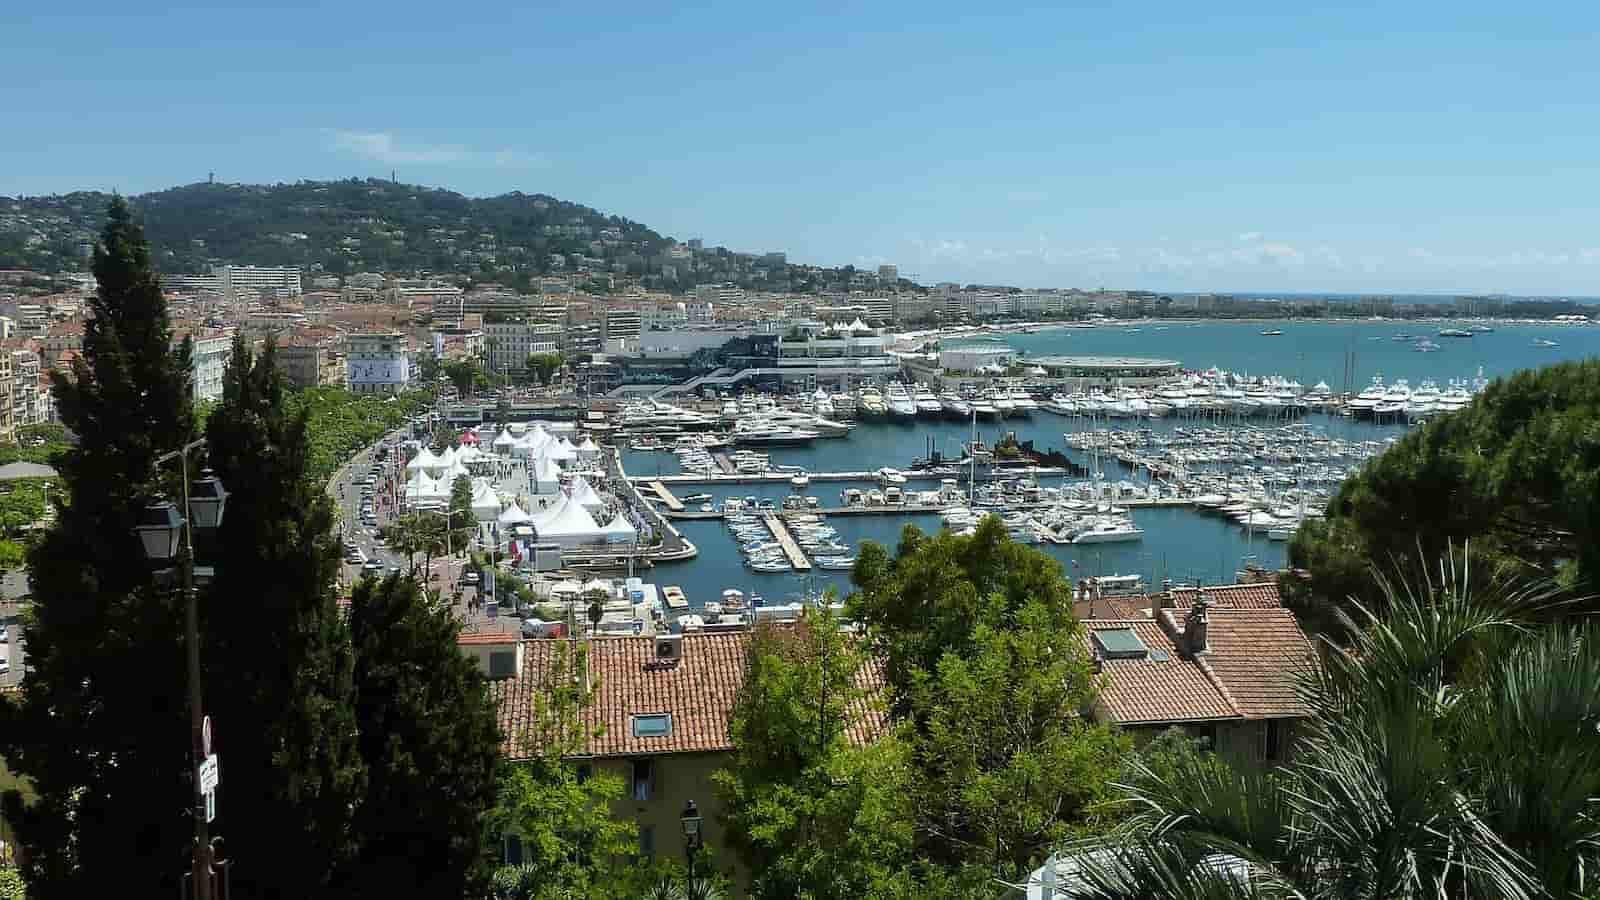 Non solo Salone Nautico, guida rapida alla città di Cannes